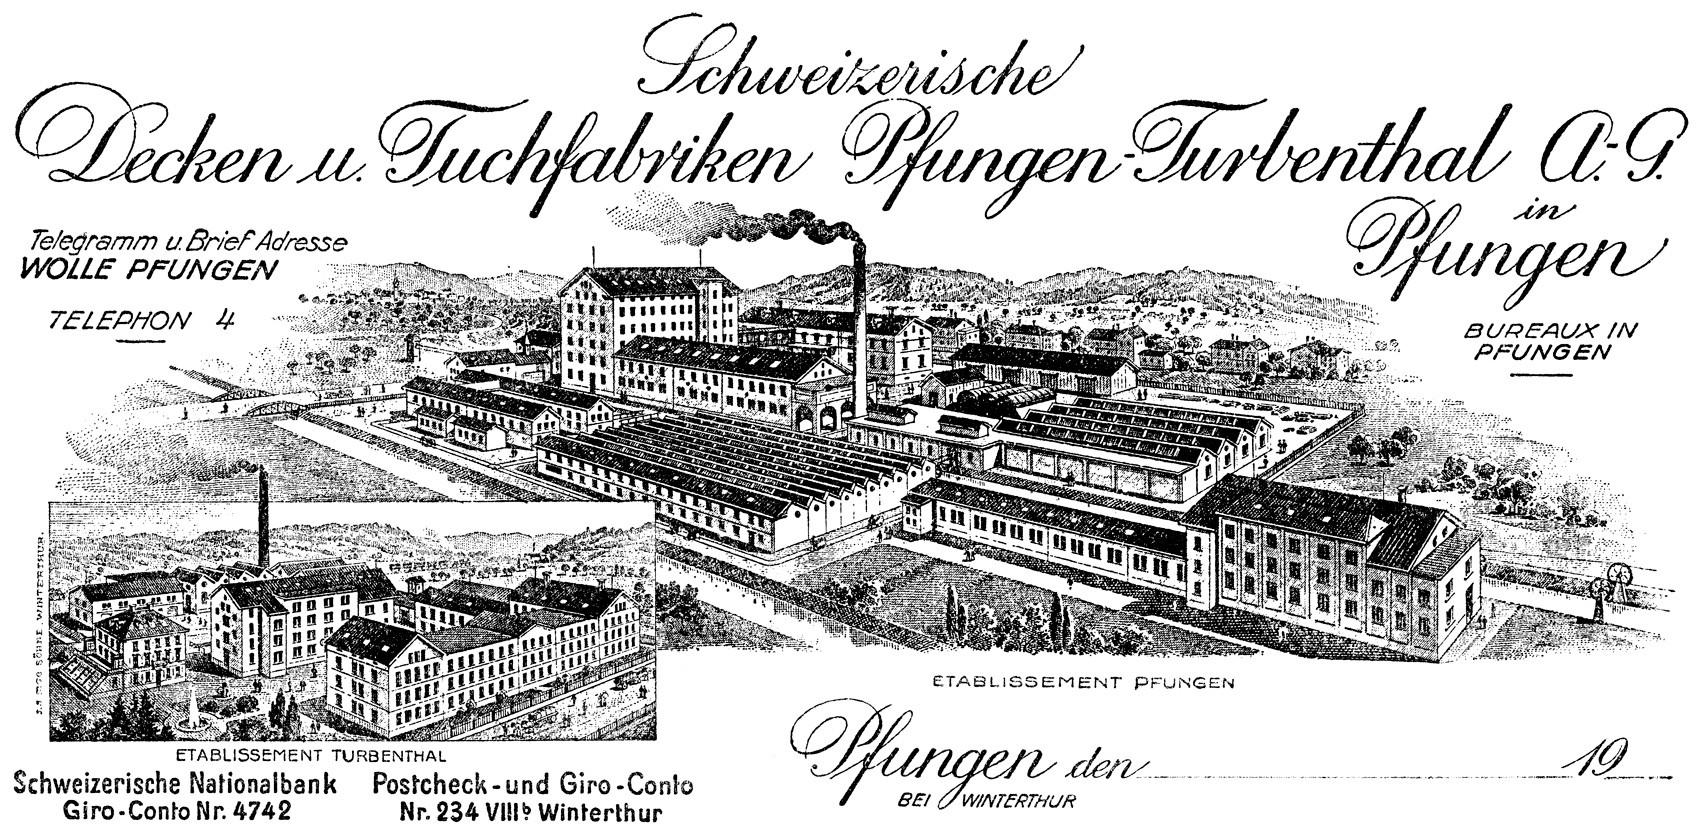 Deckenfabrik Pfungen